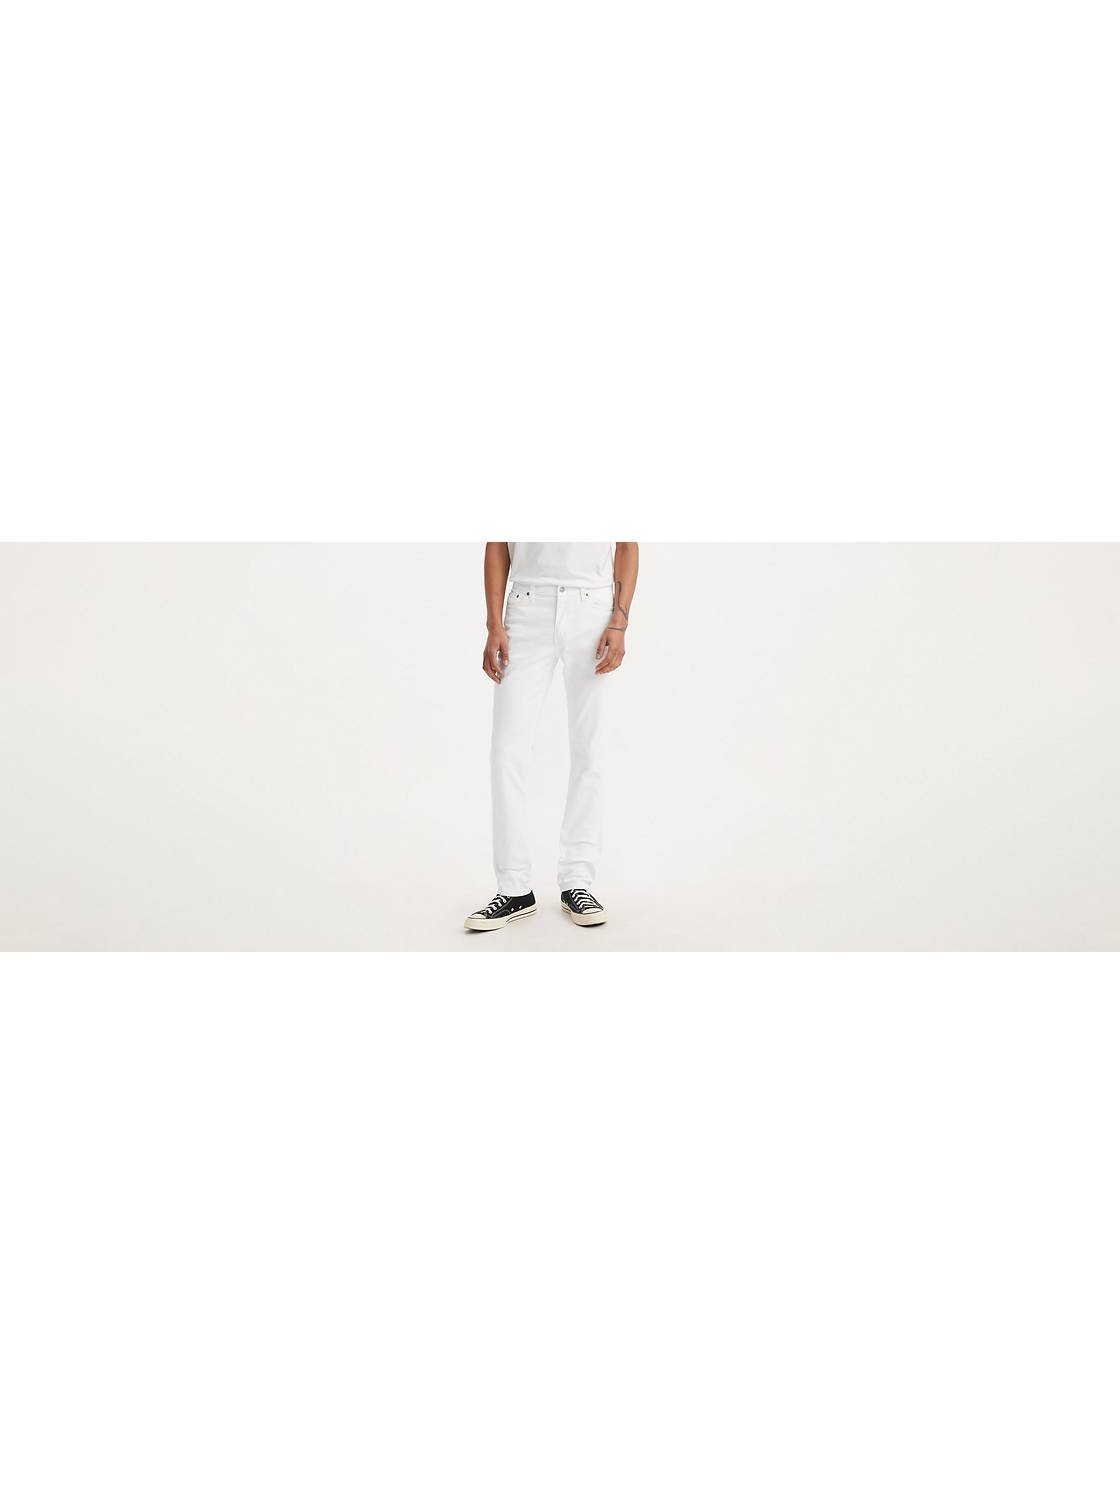 Tæller insekter Slumber Fristelse Men's White 511™ Jeans | Levi's® US